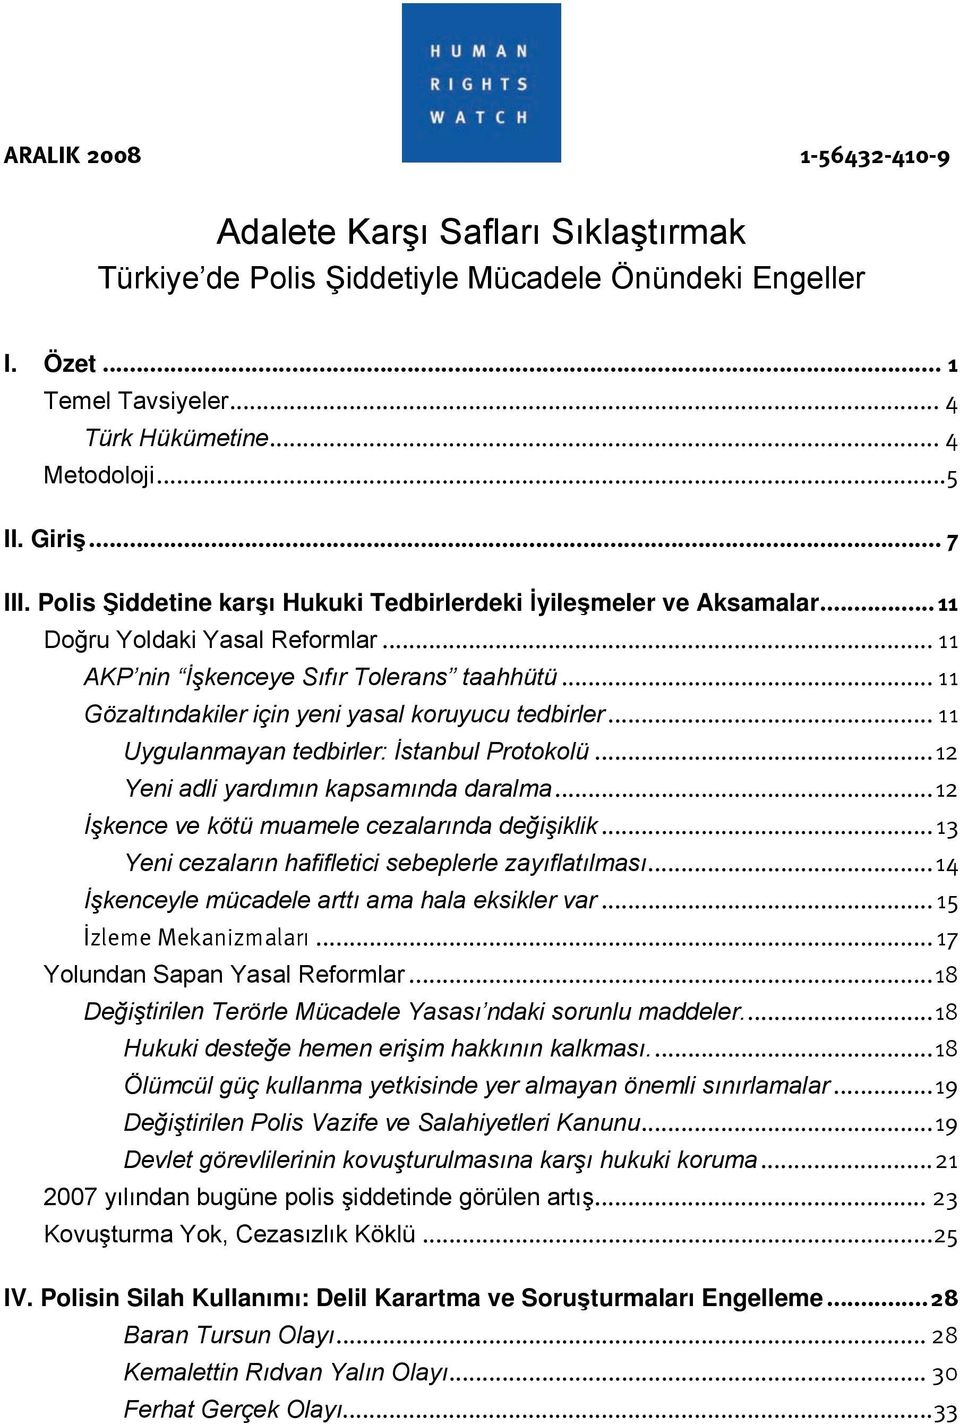 .. 11 Gözaltındakiler için yeni yasal koruyucu tedbirler... 11 Uygulanmayan tedbirler: İstanbul Protokolü... 12 Yeni adli yardımın kapsamında daralma.